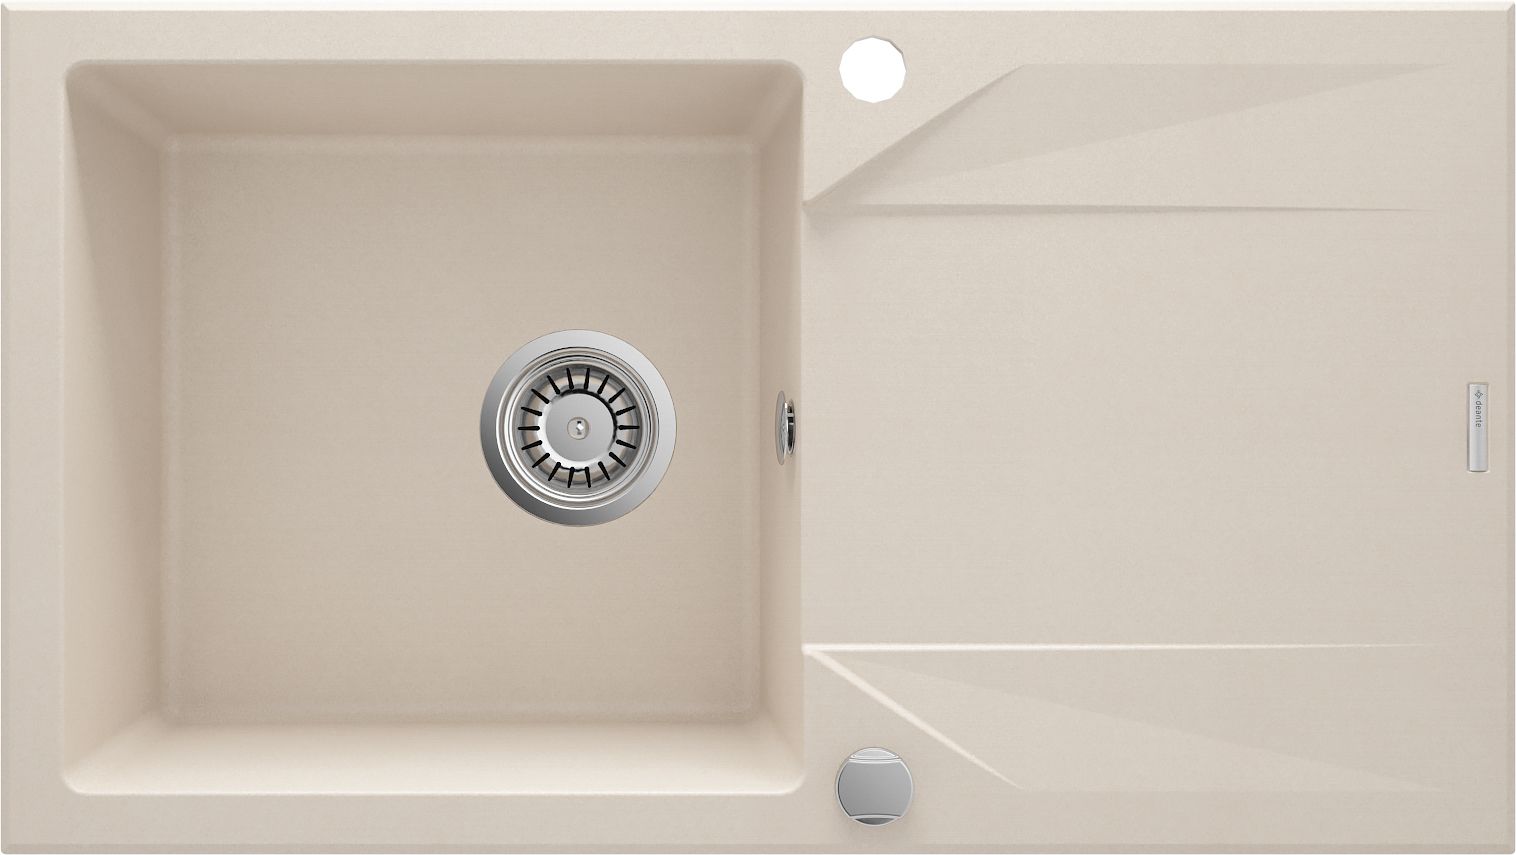 Granite sink, 1-bowl with drainer - ZQJ_5113 - Główne zdjęcie produktowe